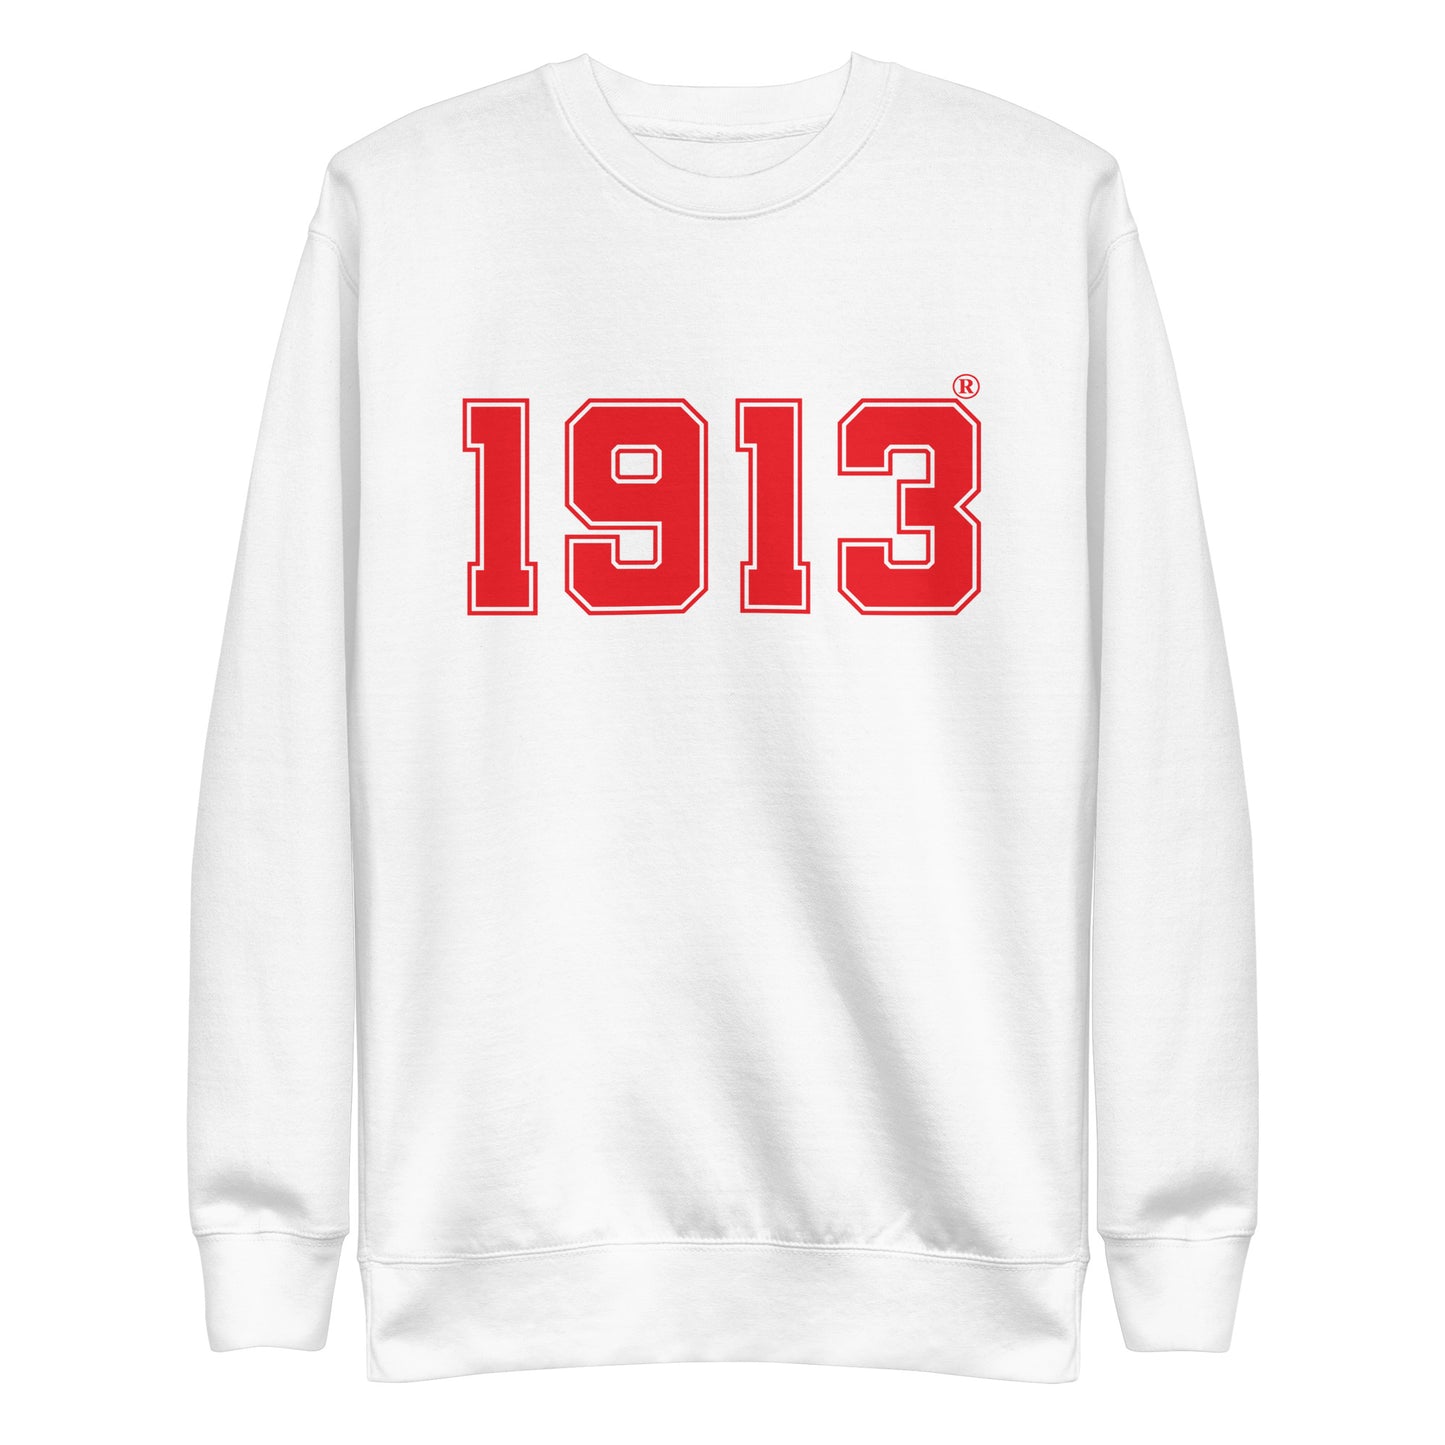 Delta 1913 Sweatshirt